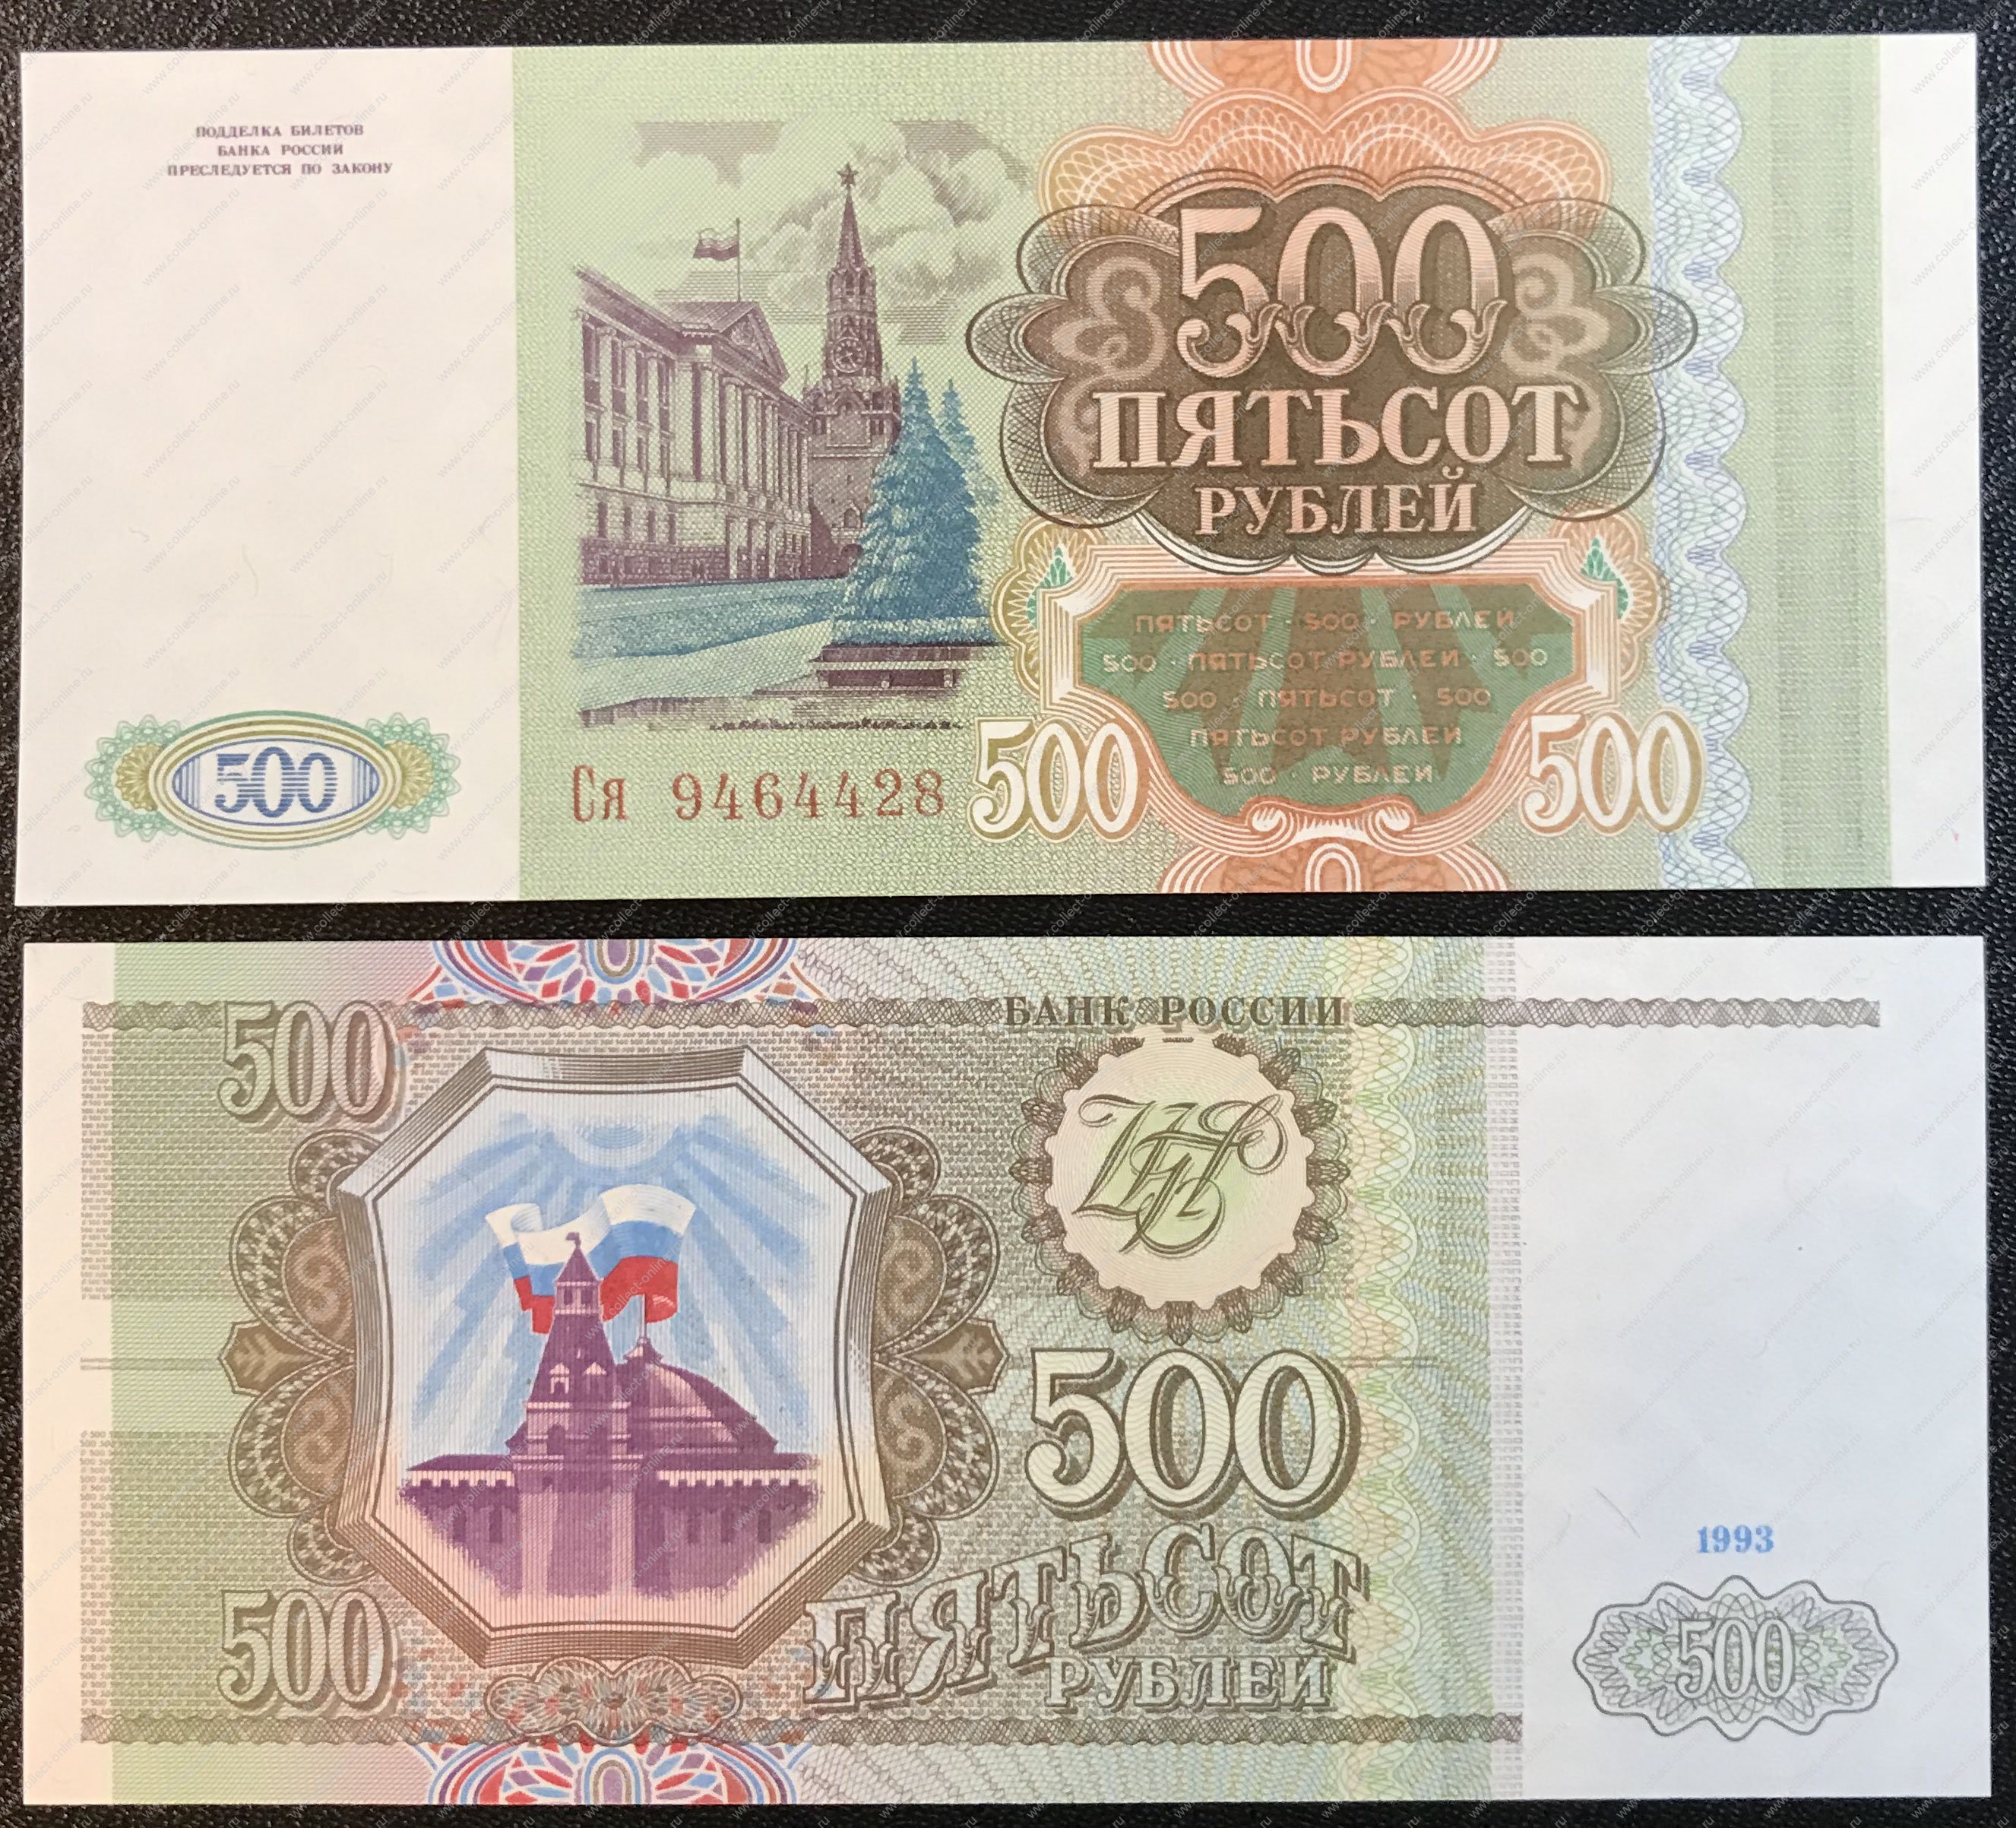 Сколько стоит купюра 1993. Купюра 500 рублей 1993 года. Банкнота 500 рублей 1993. Купюра 500 рублей 1993. 500 Рублей 1993 года.